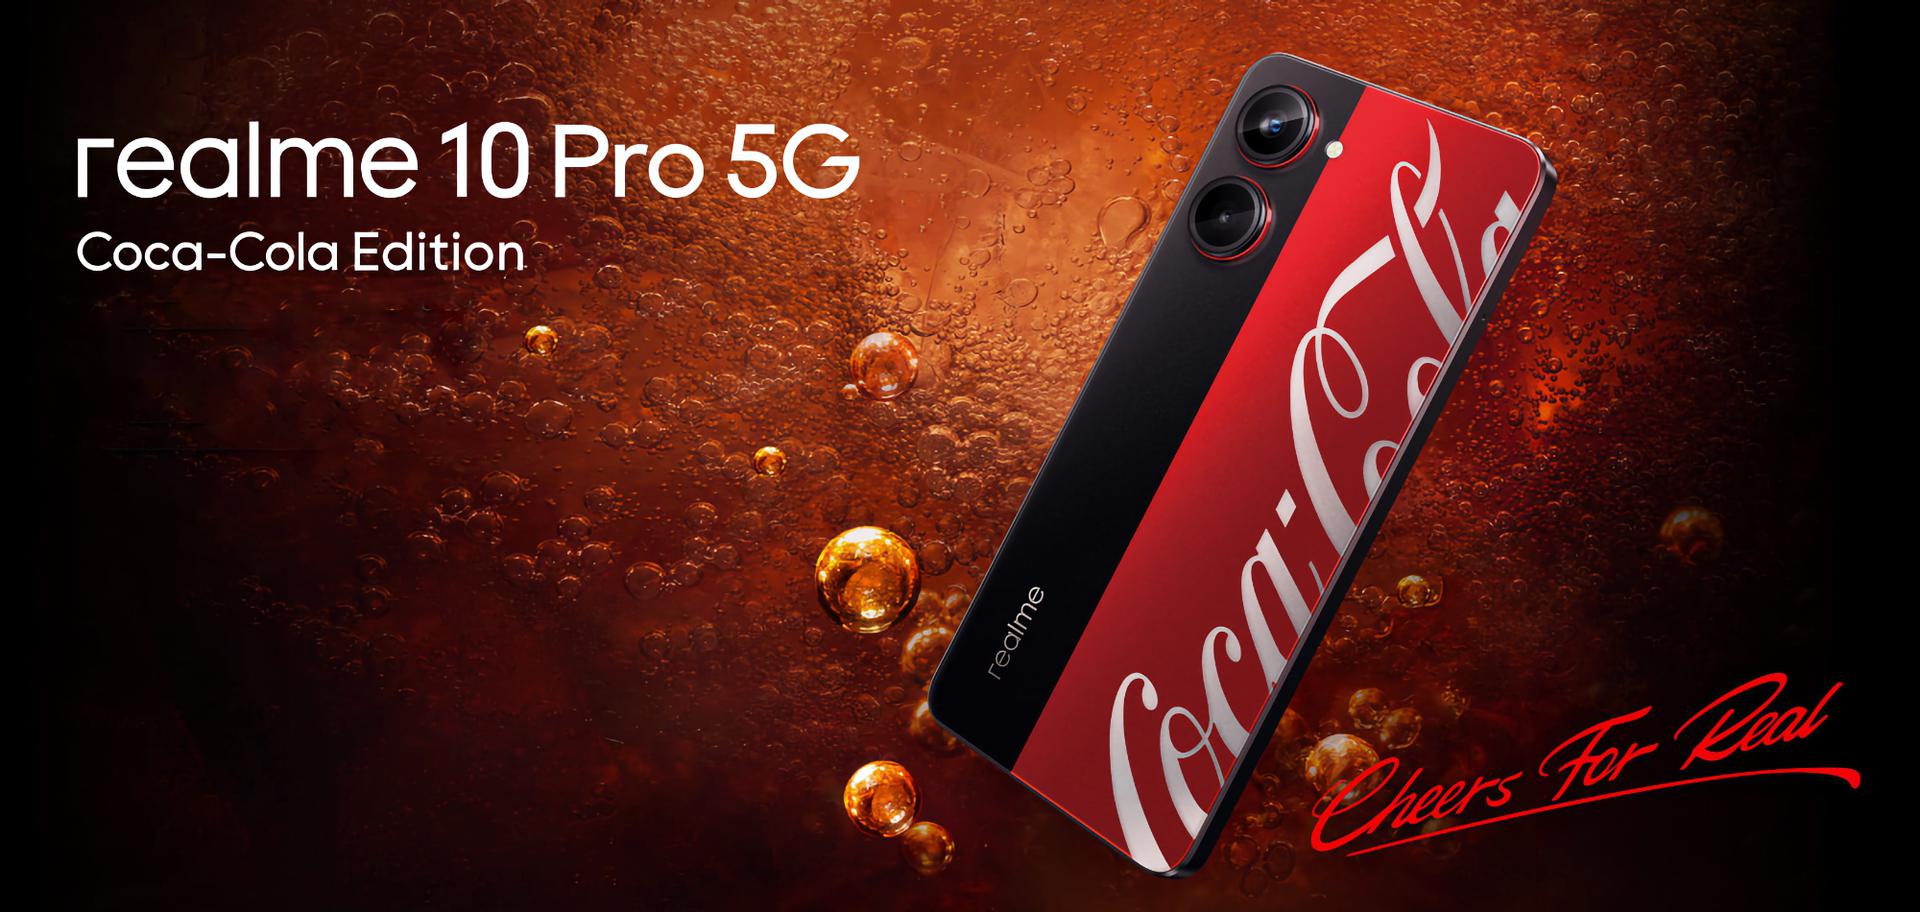 Insider zeigte ein Video des realme 10 Pro 5G Coca Cola Edition: eine spezielle Version des realme 10 Pro 5G Smartphone mit einem 120Hz Bildschirm und Snapdragon 695 Chip